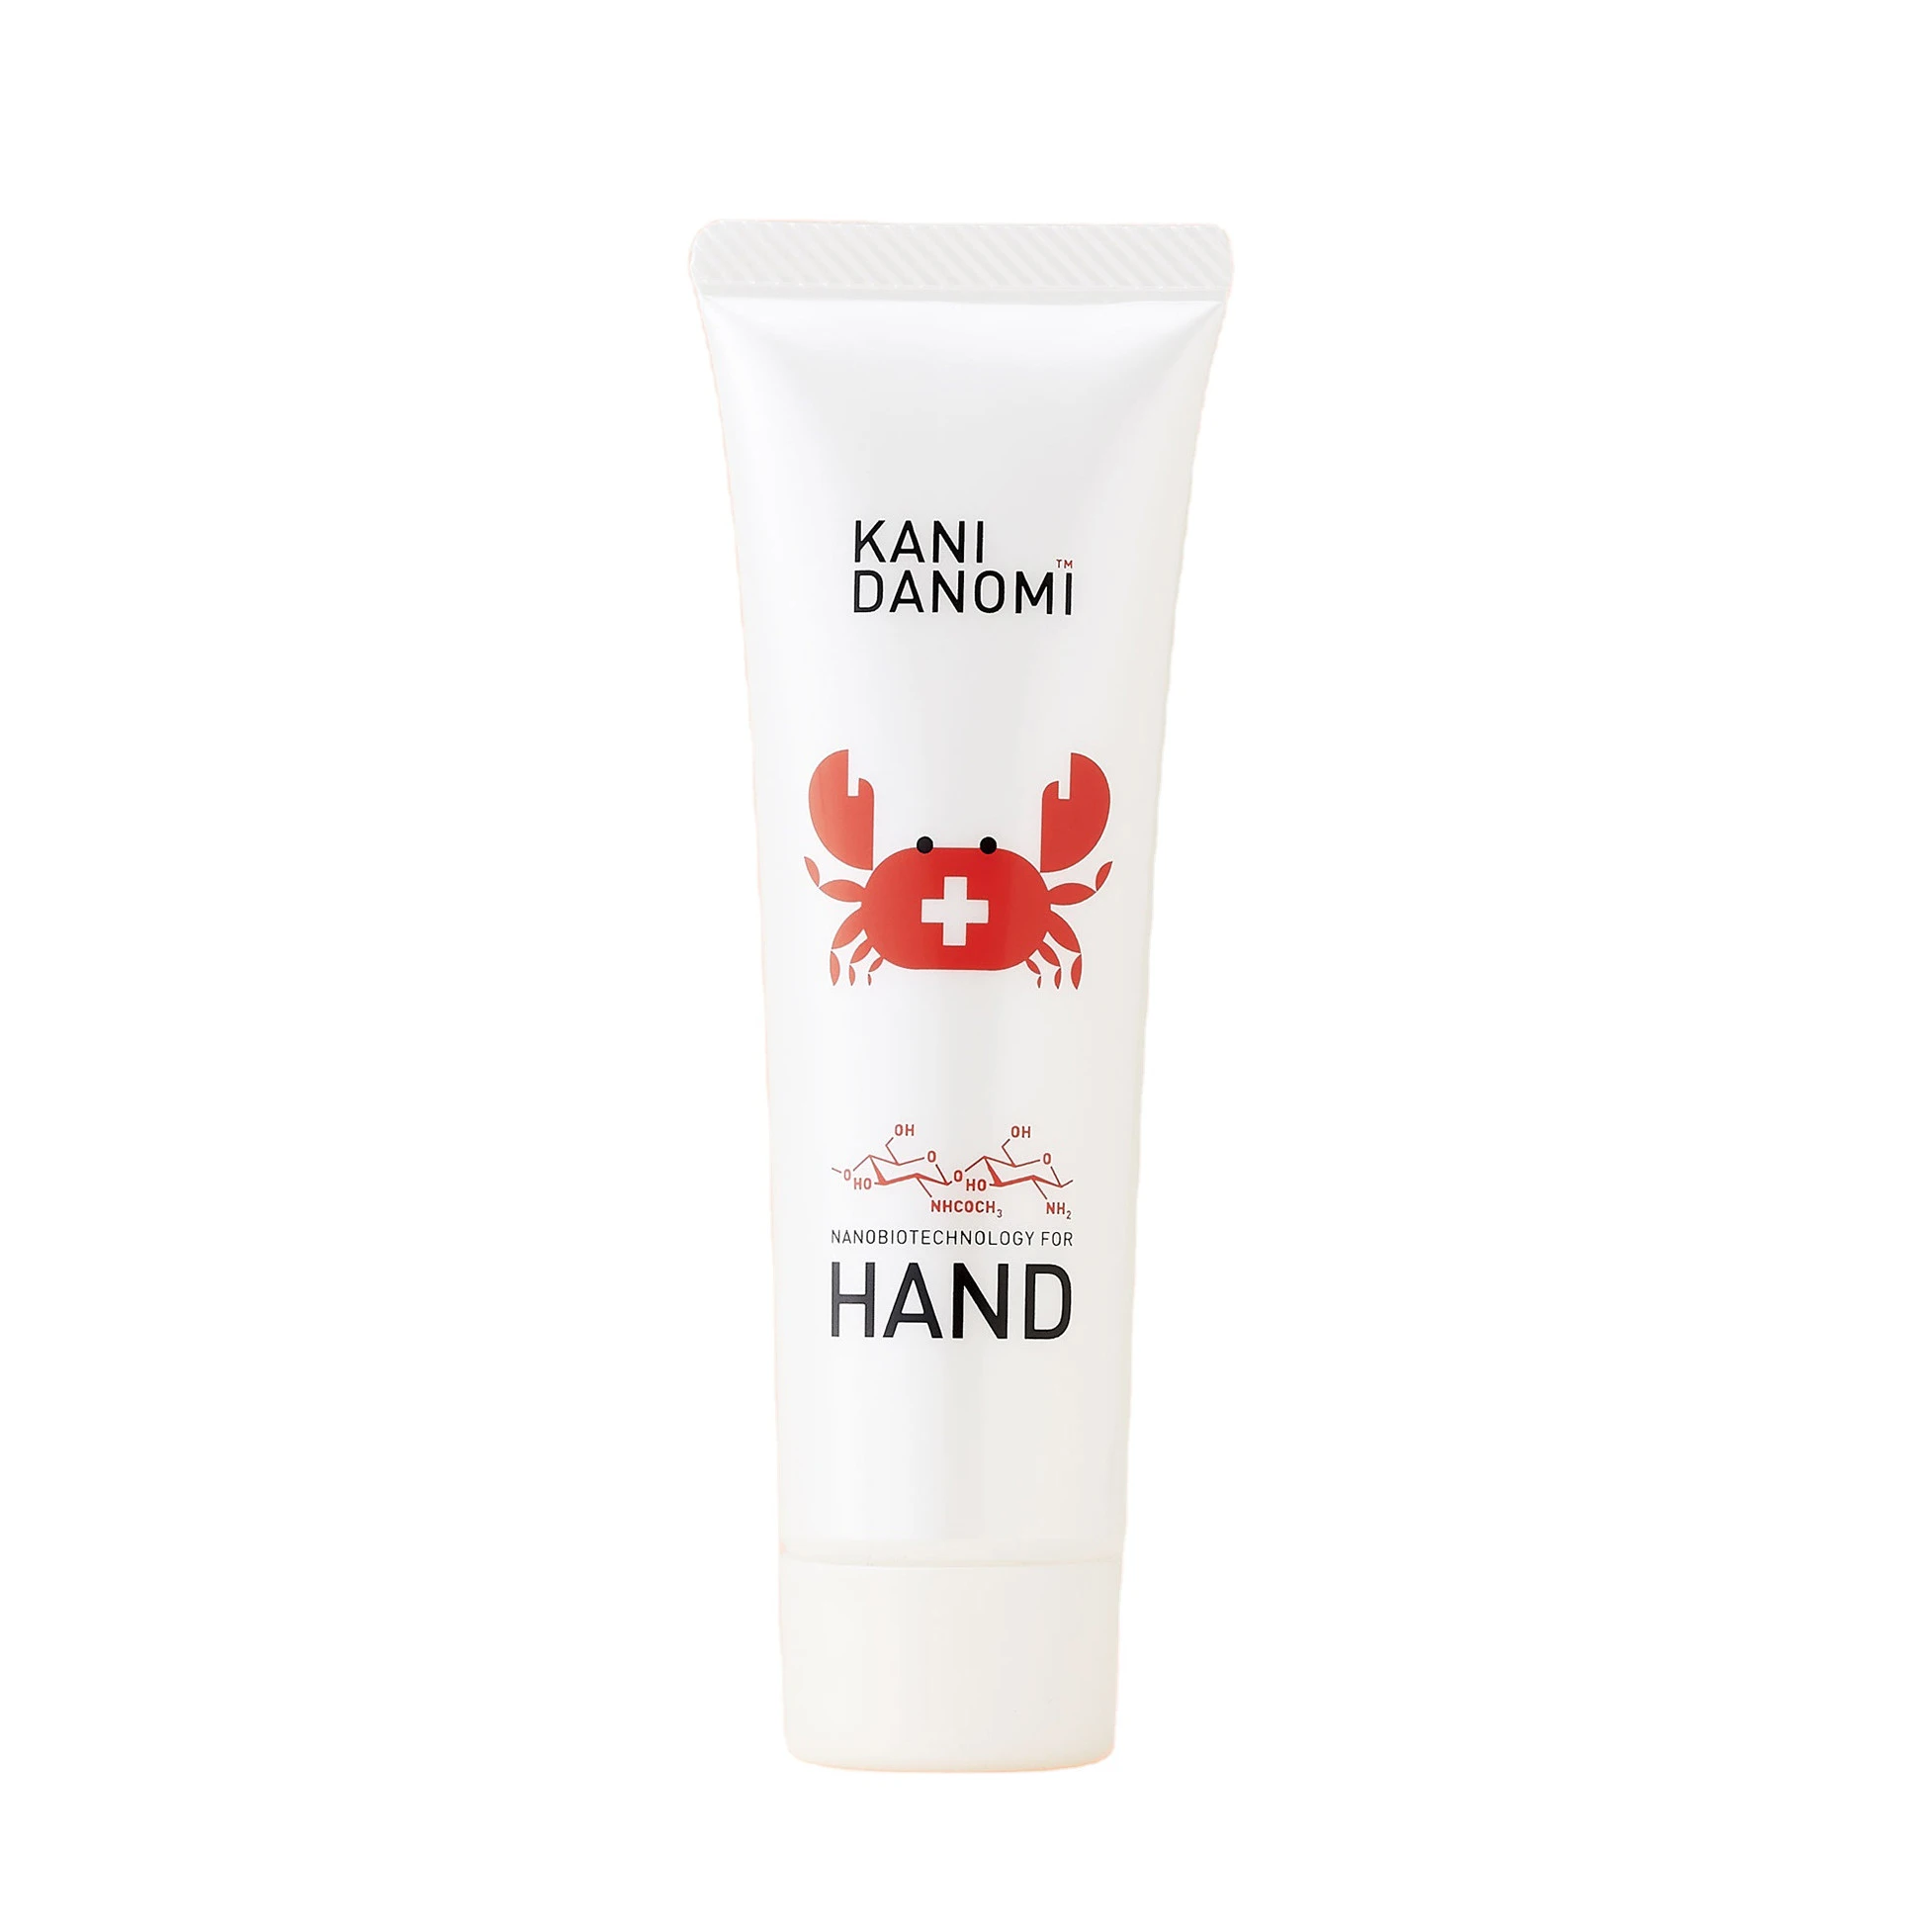 KANIDANOMI nano bio skincare private label lotion hand cream